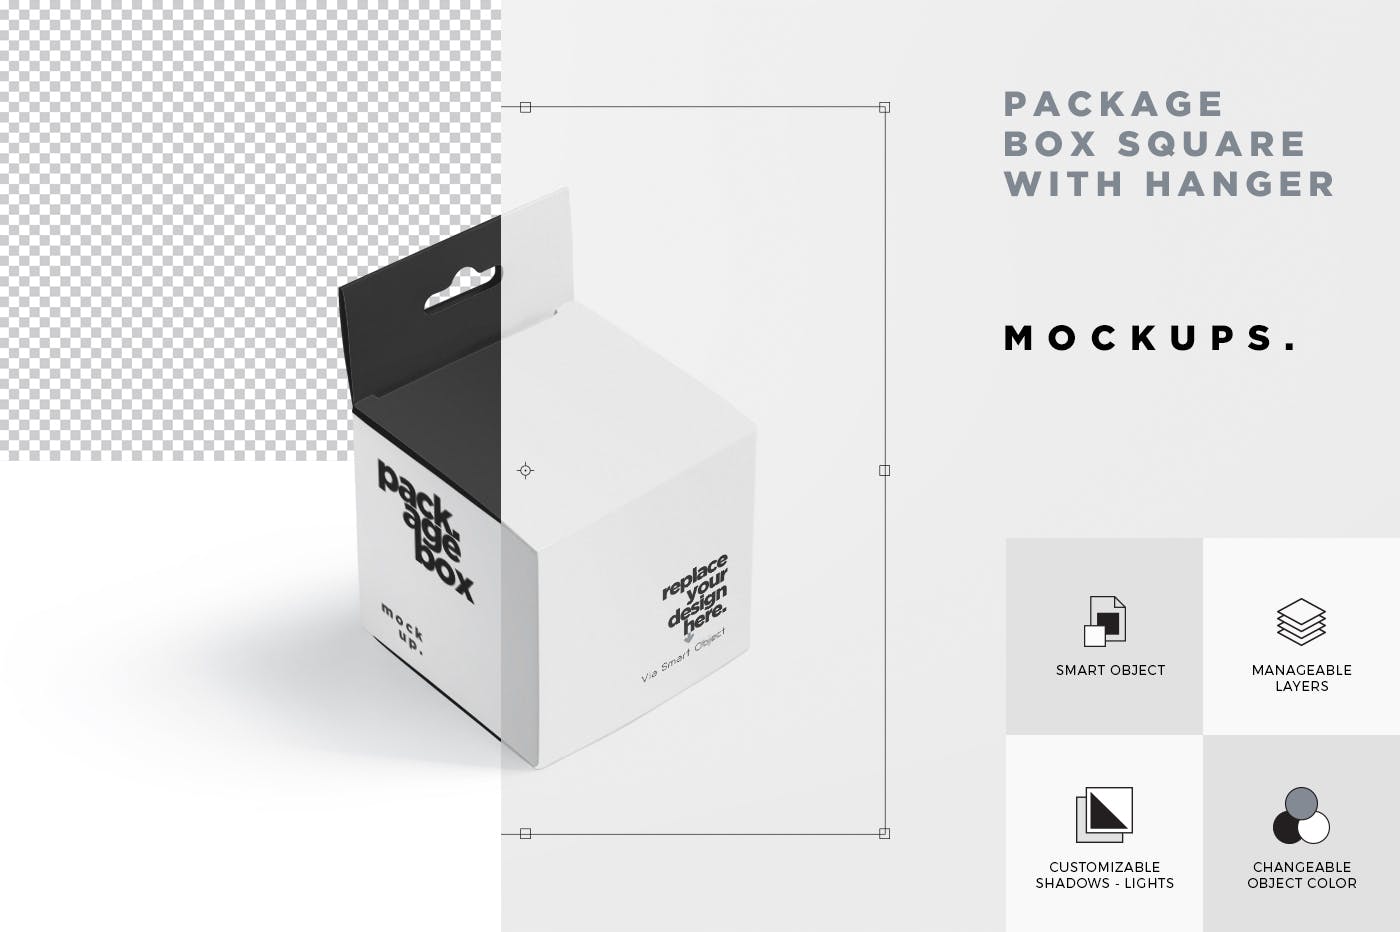 挂耳式方形产品包装盒样机模板 Package Box Mockup Set – Square With Hanger插图6